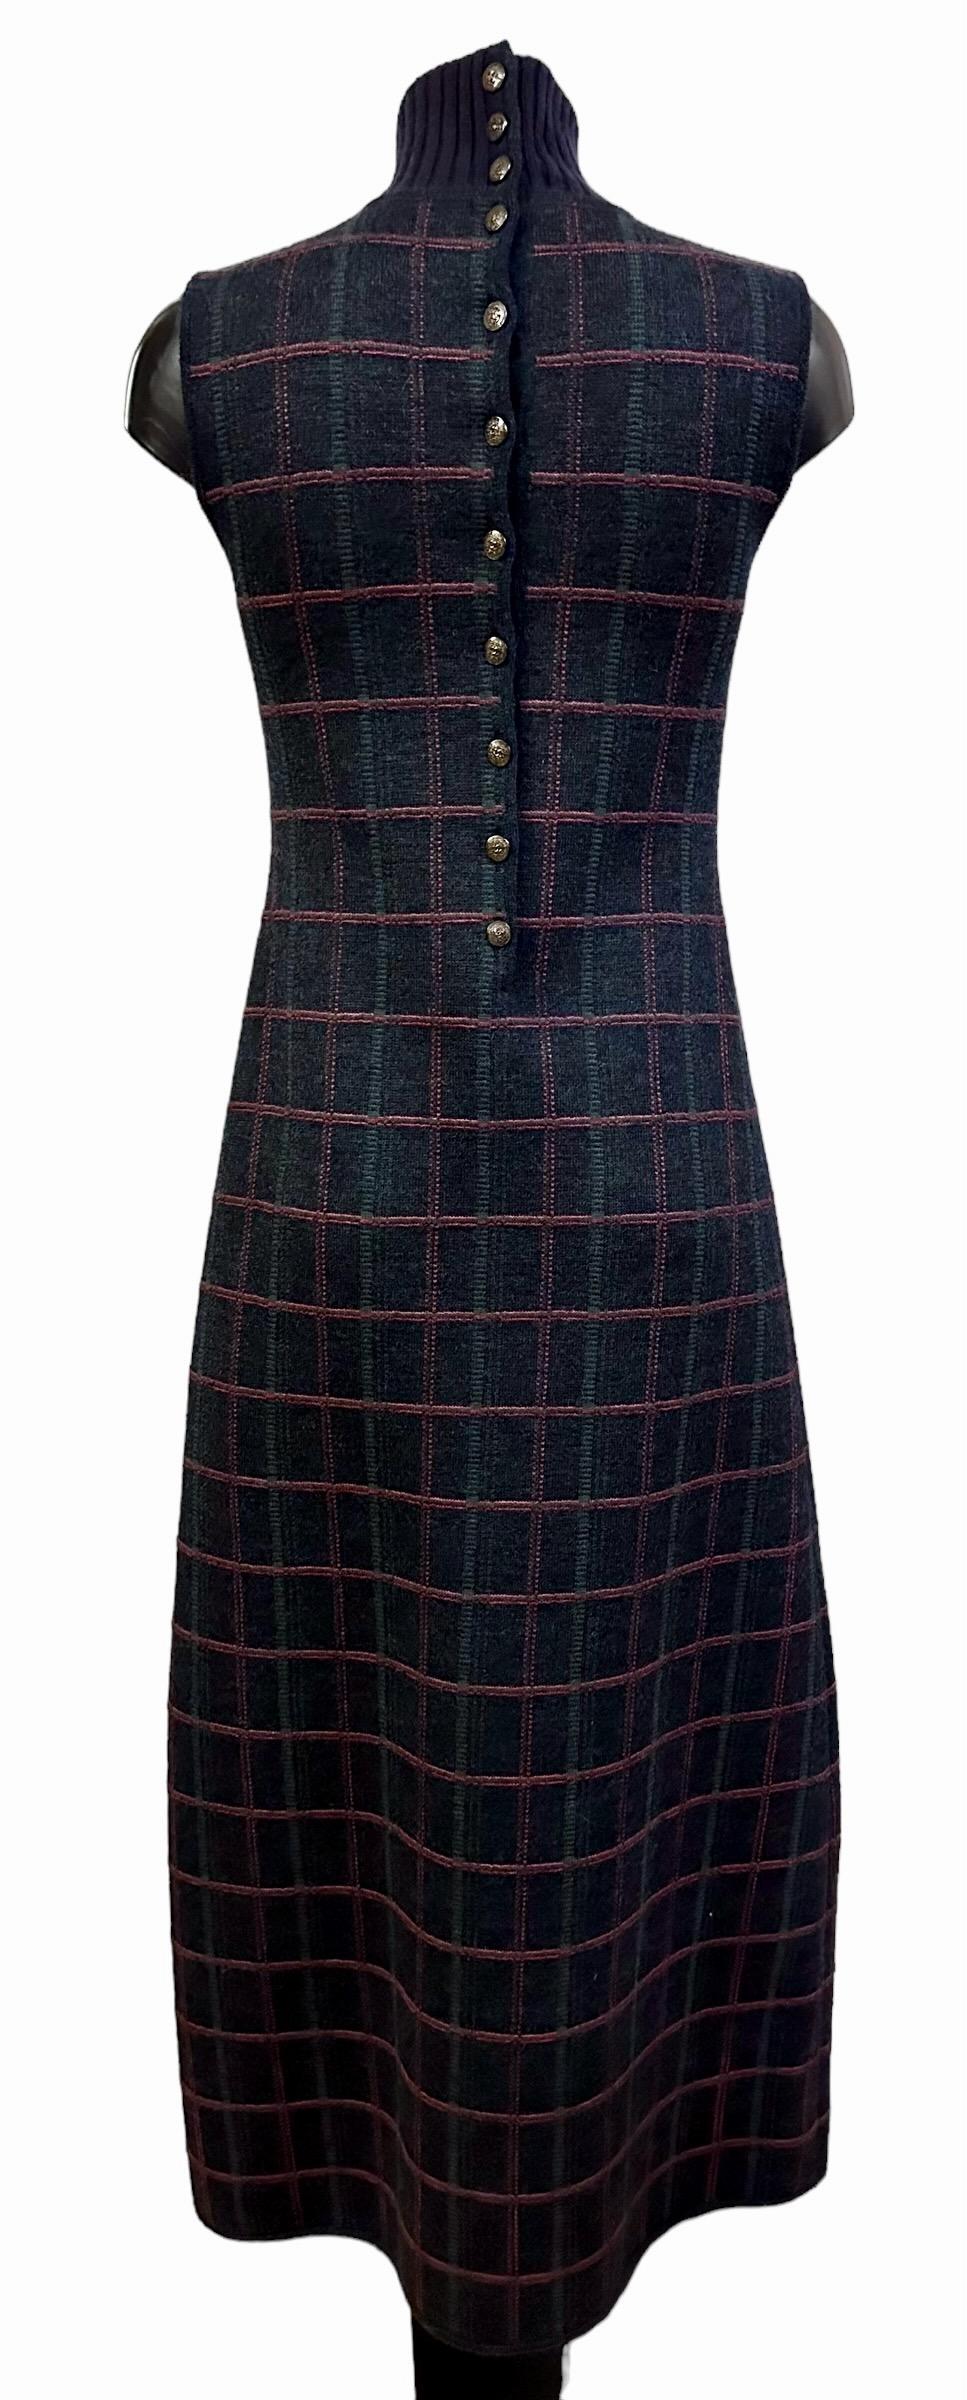 Makelloses Maxikleid aus der Chanel-Kollektion der Métiers d'Art Paris Edinburgh 2012 / 2013.
Dieses Kleid aus Tweed mit Tartanmuster ist in seiner Schlichtheit perfekt.

Collection'S: Métiers d'Art Paris Edinburgh 2012/2013
Gewebe: 34% Schurwolle -